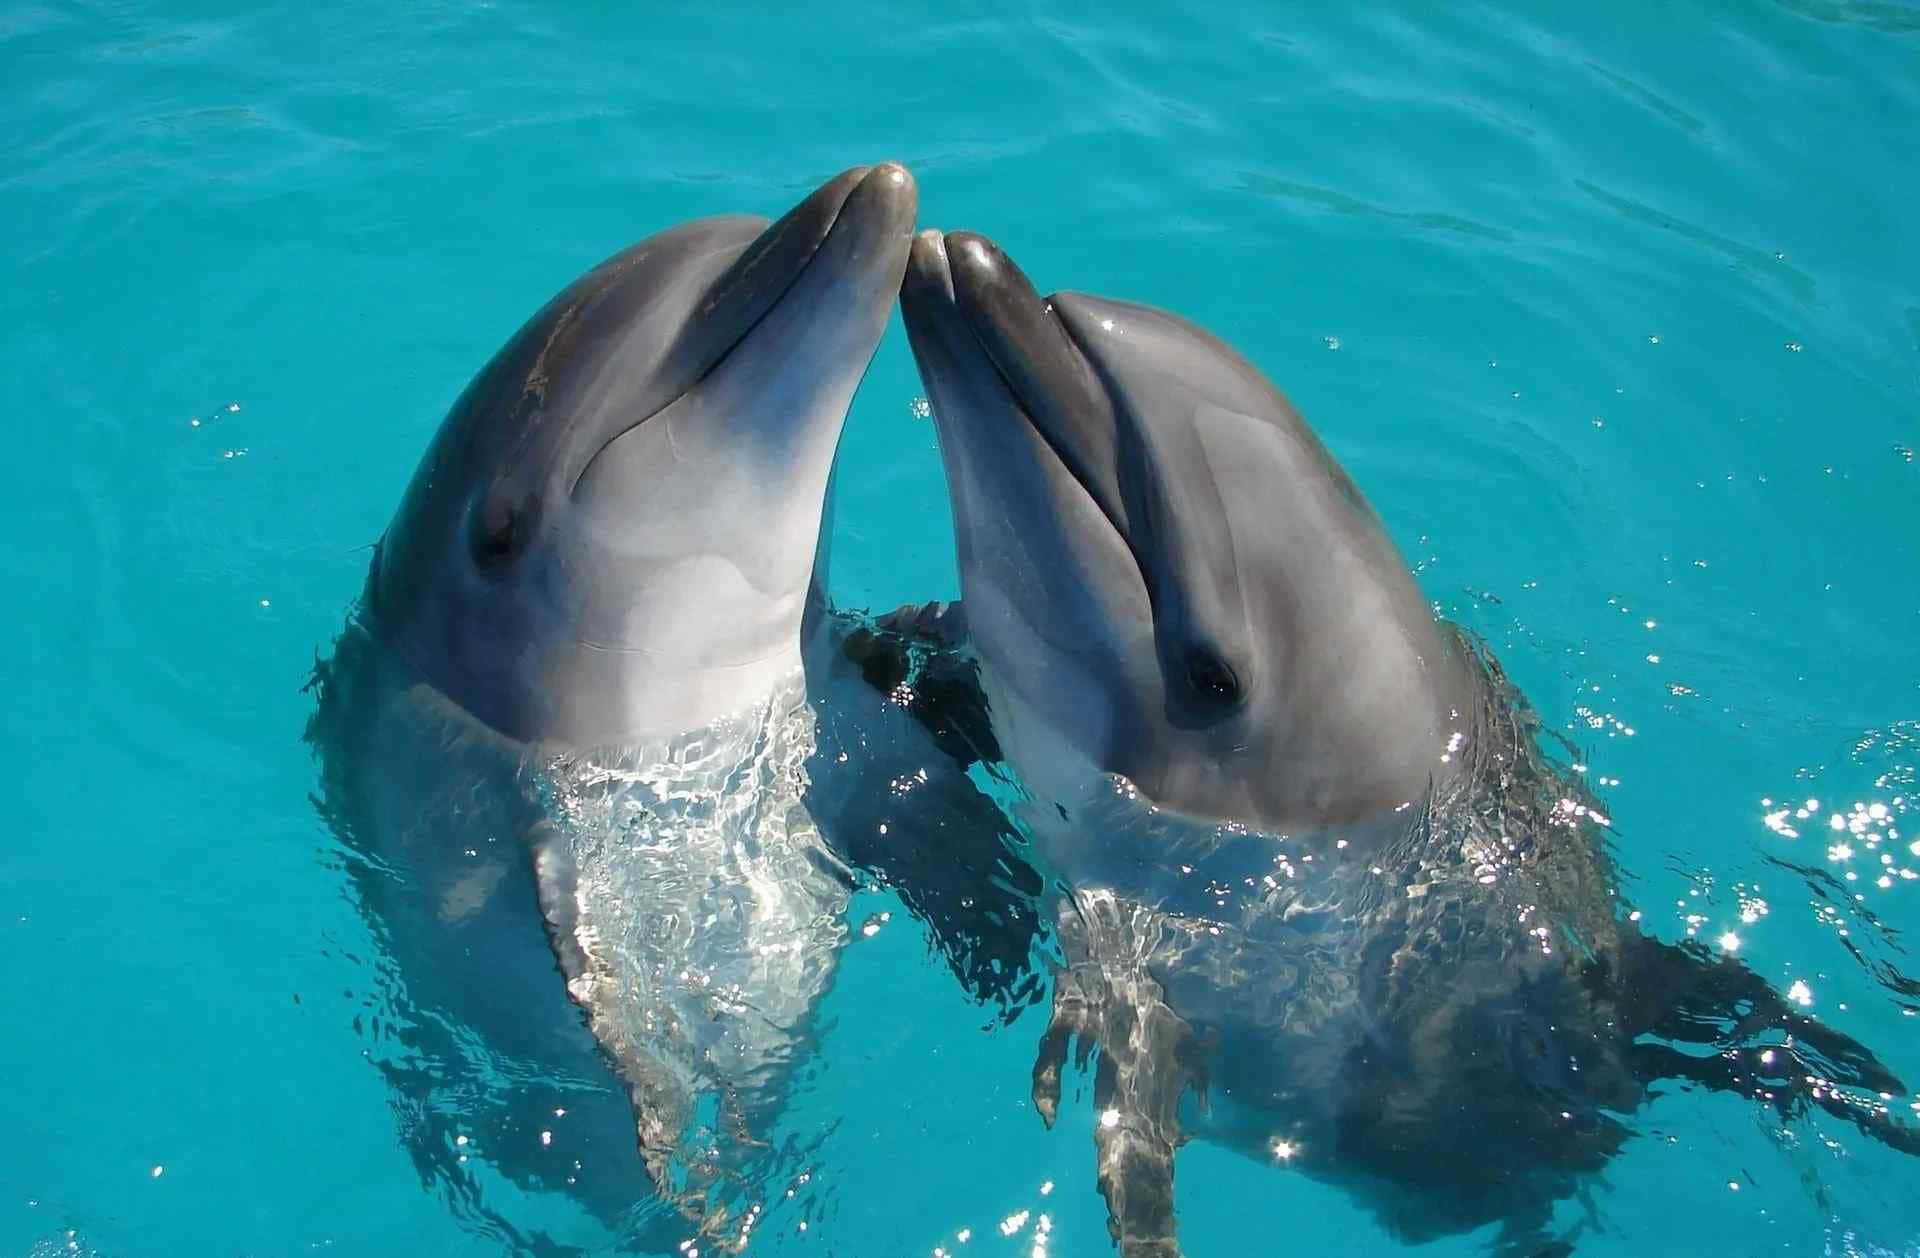 Carinafoto Di Una Coppia Di Delfini Nell'acqua.